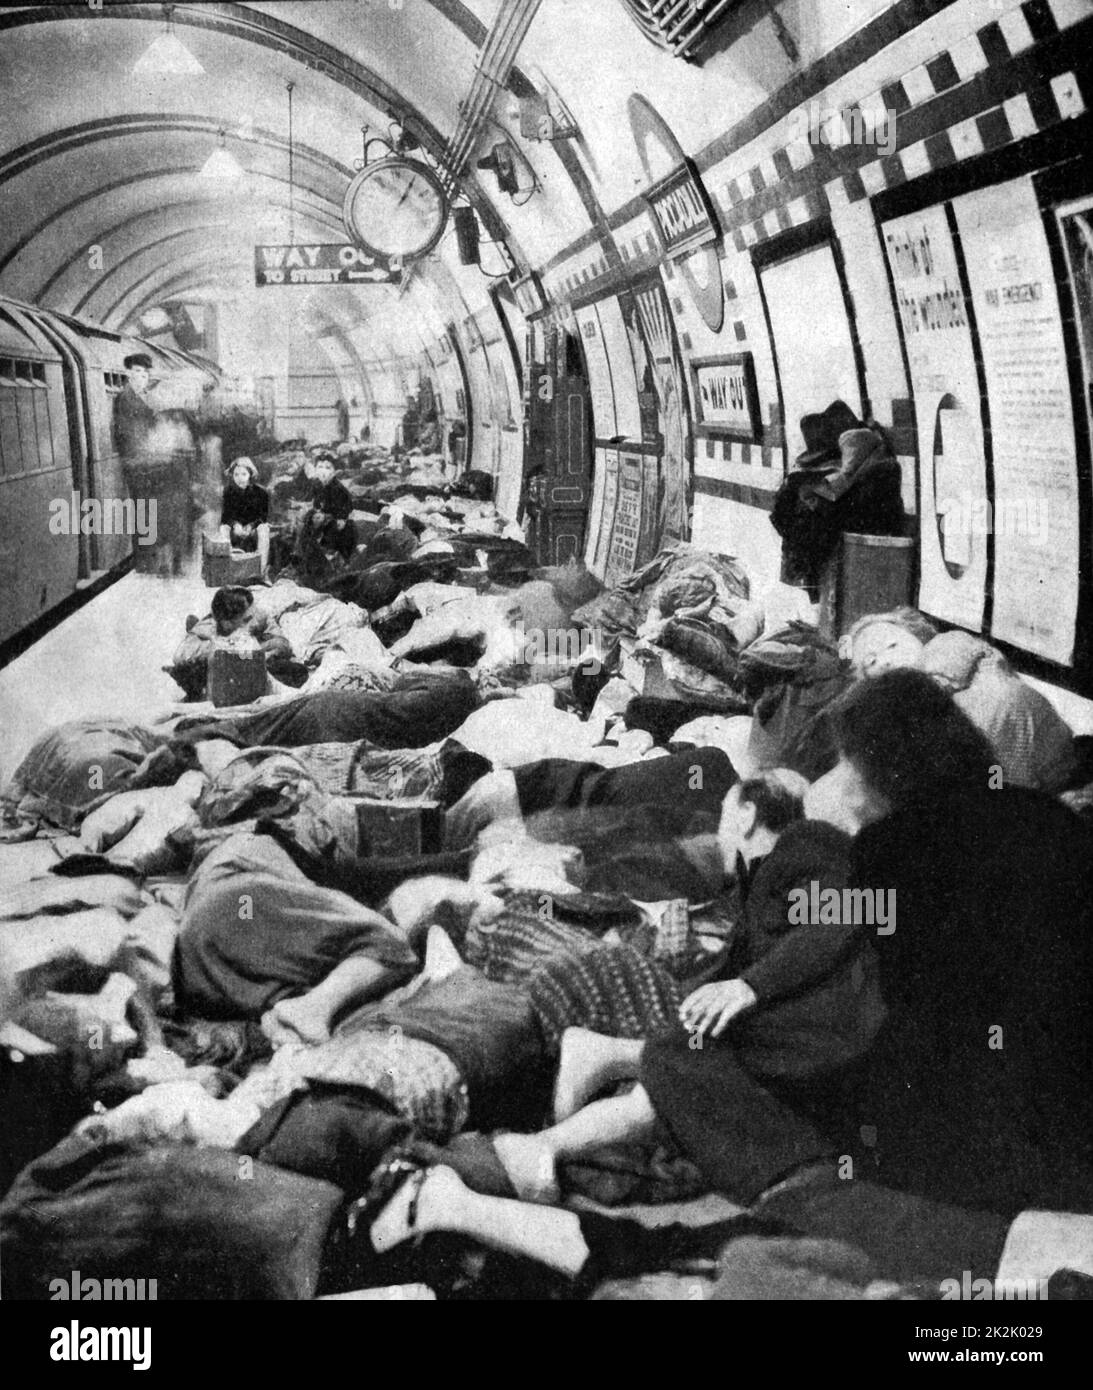 Londoners se trouvant sur la plate-forme d'une station sur le métro (métro) pendant le Blitz. Londres a été bombardée pendant 76 nuits consécutives par la Luftwaffe (force aérienne allemande) entre juillet 1940 et mai 1941. Banque D'Images